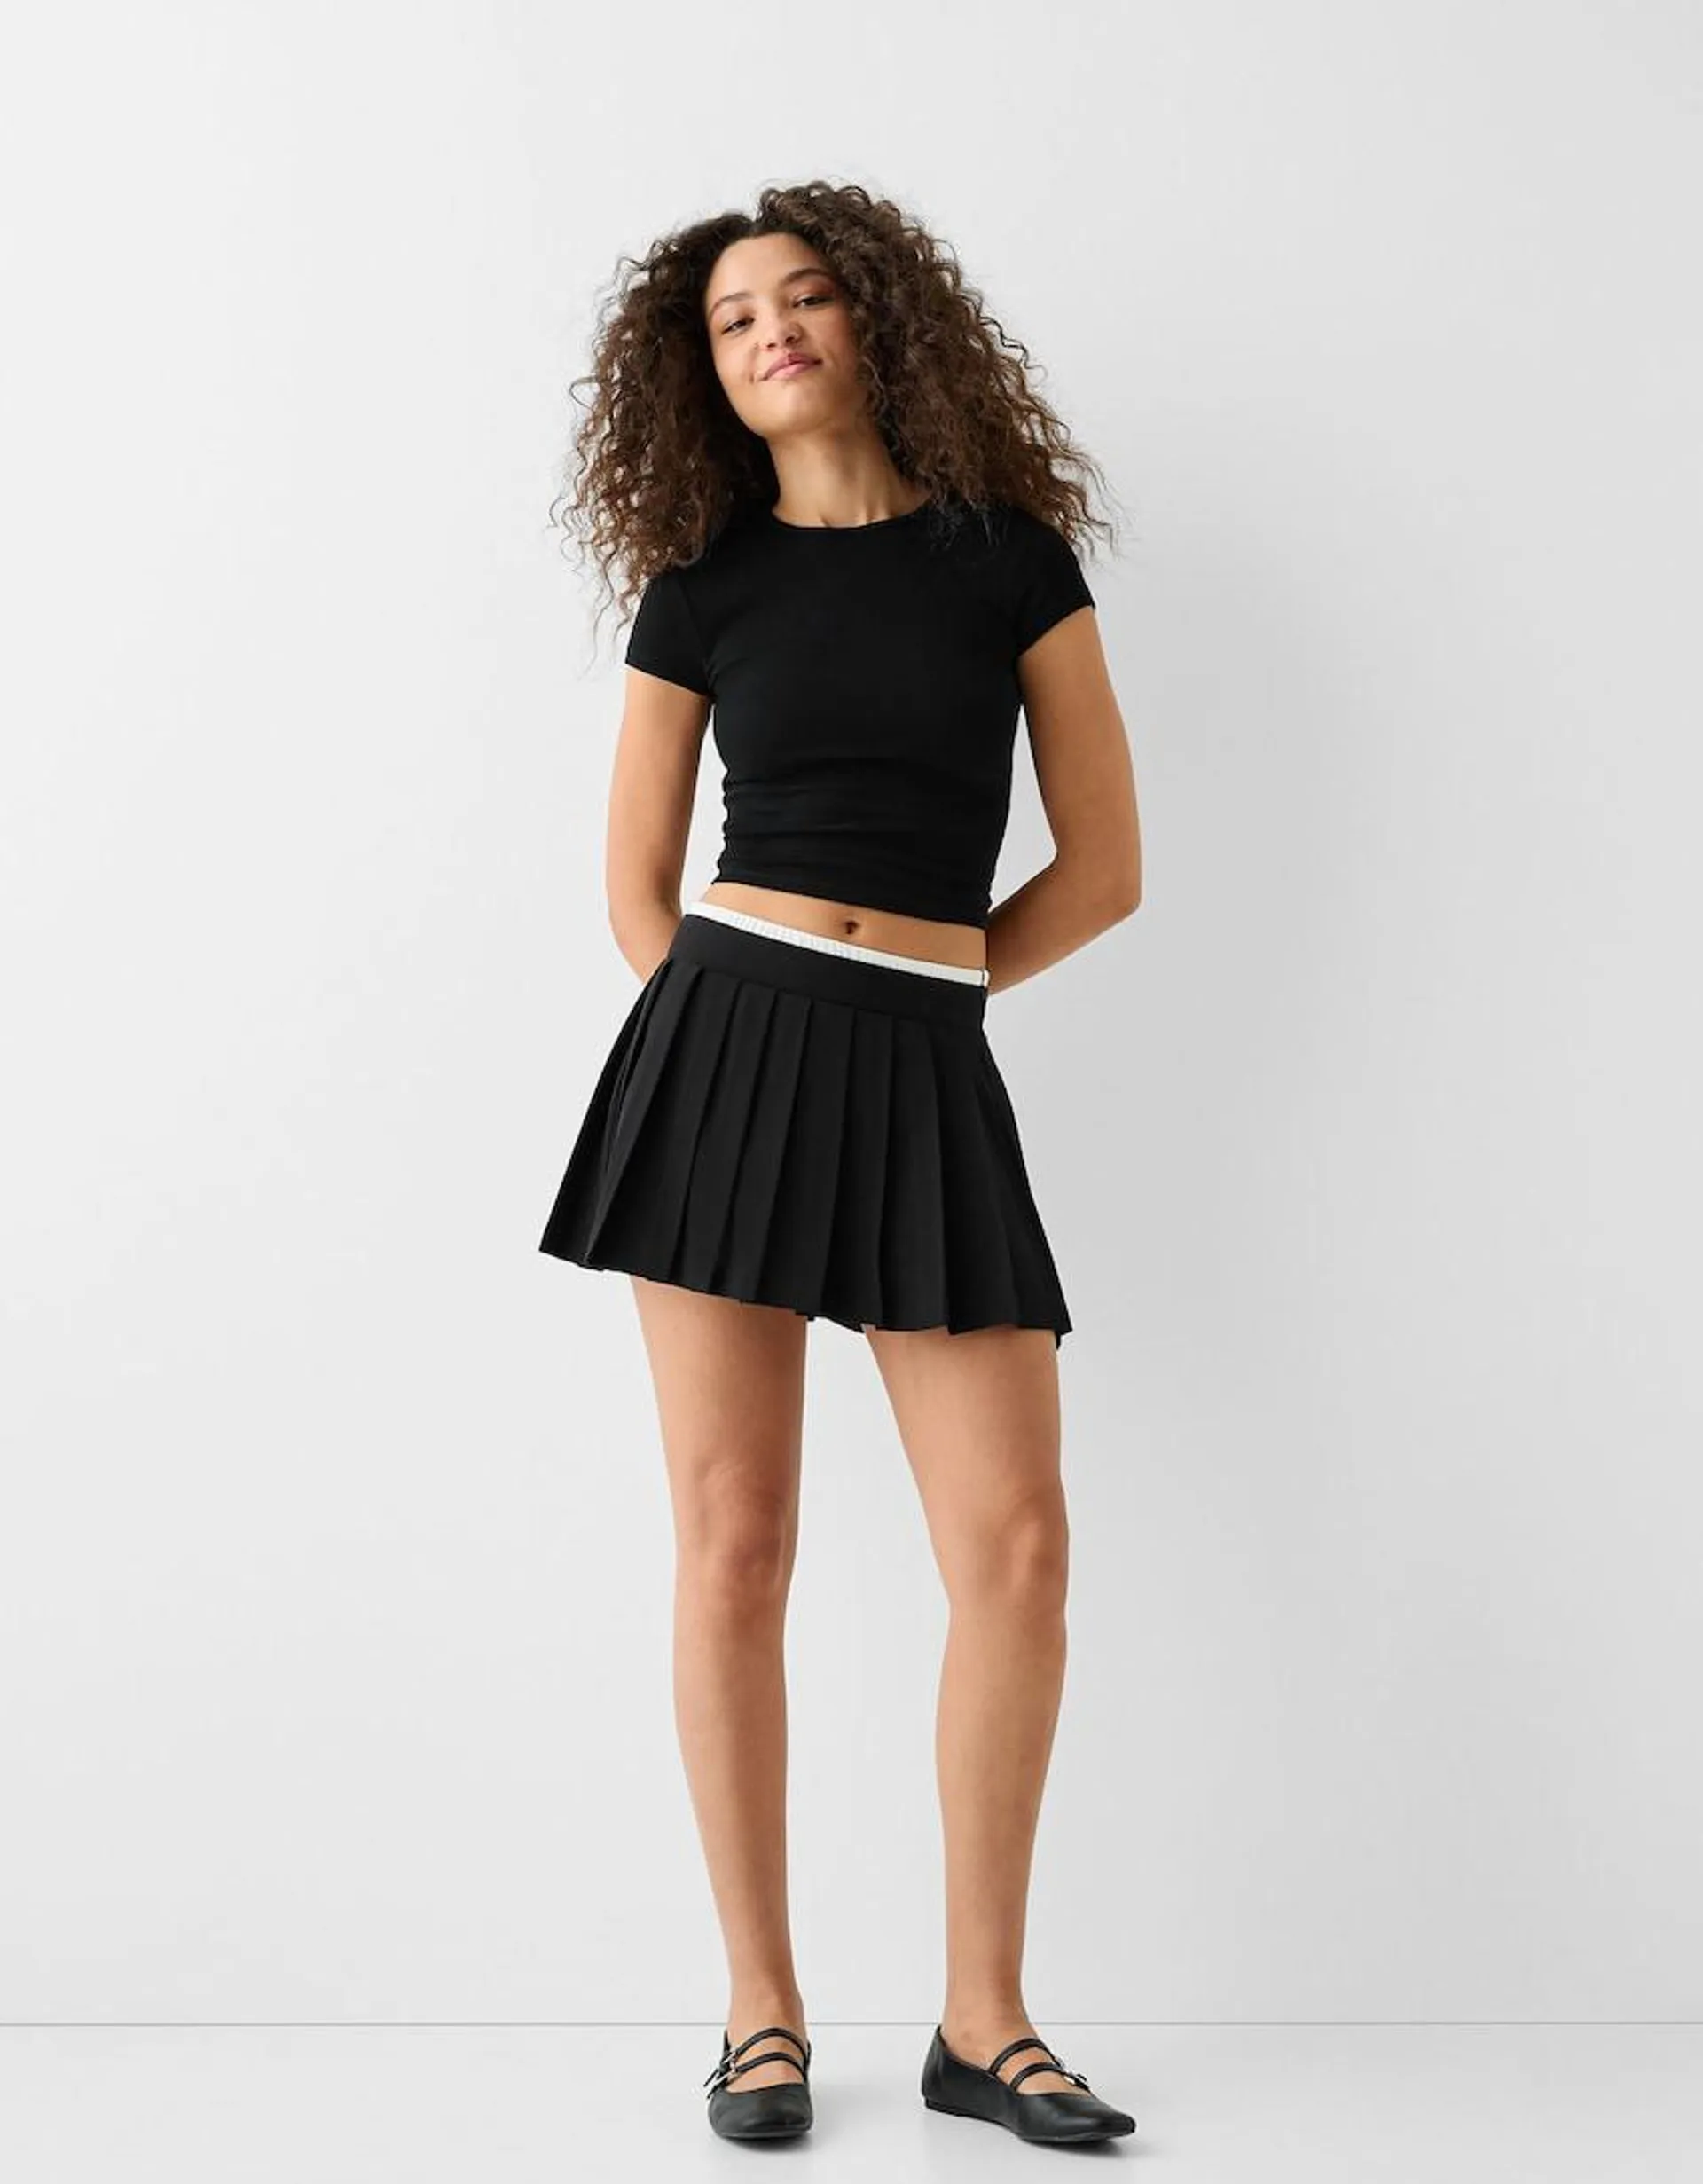 Contrast elastic poplin box pleat mini skirt